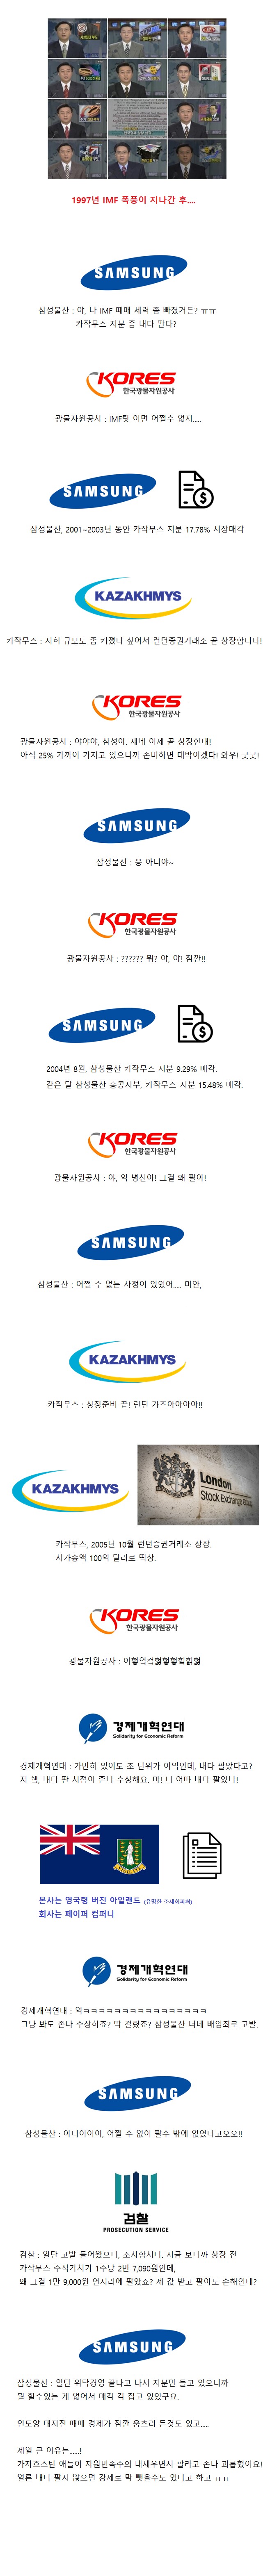 삼성이 카자흐스탄에서 삼성한 사건